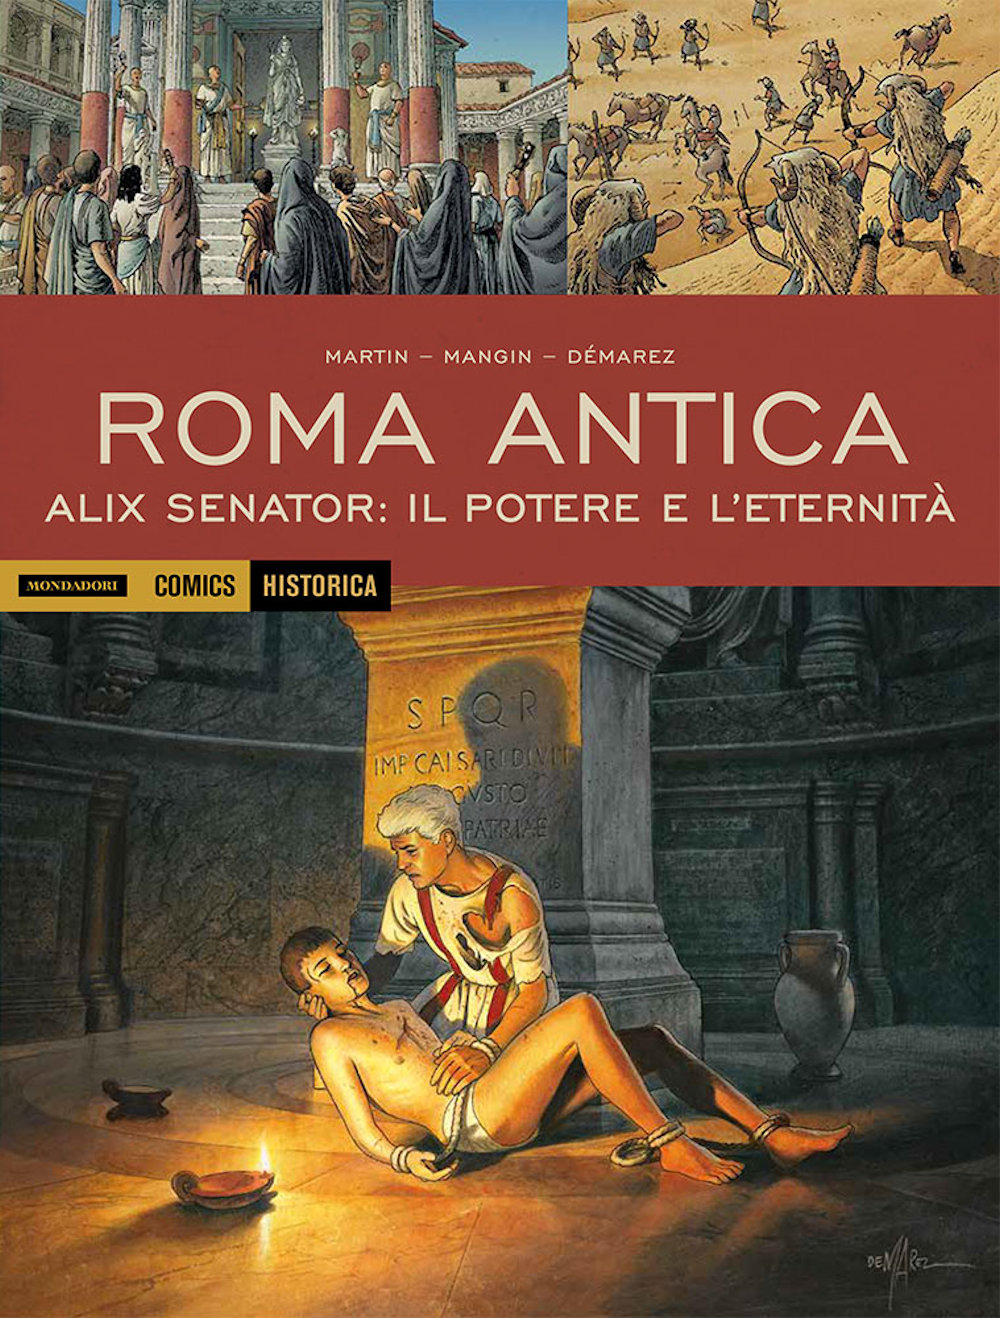 Roma antica: Alix Senator – il potere e l’eredità